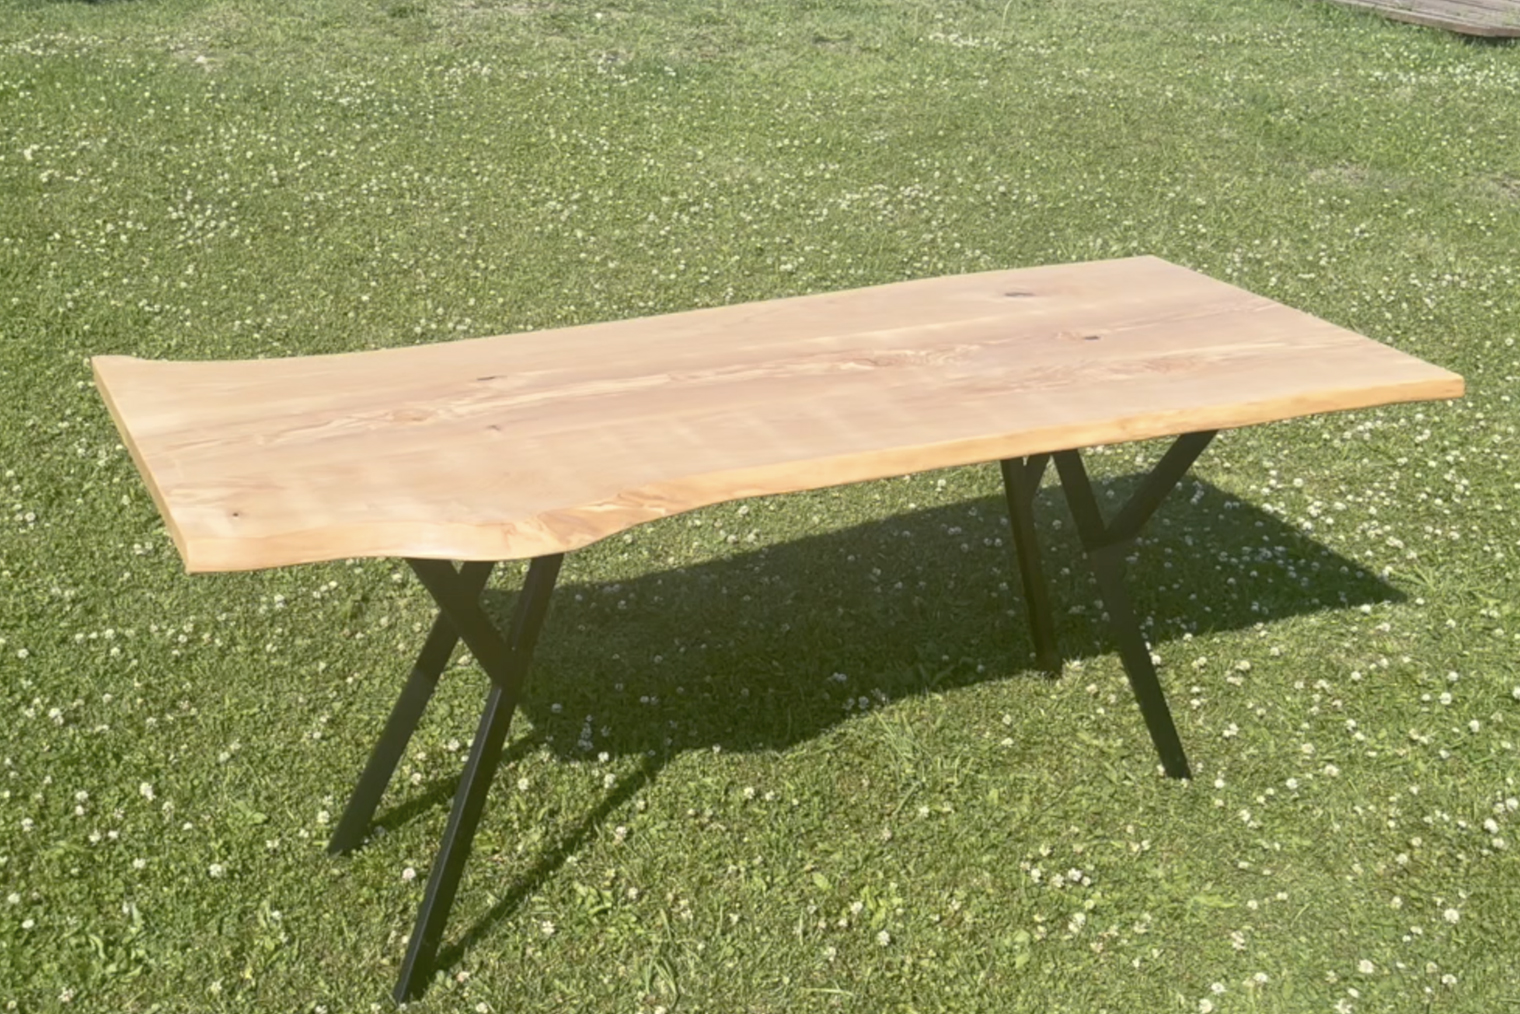 Это стол на металлических ножках со столешницей из слэбов — естественных срезов древесины. Его делал в 2022 году и разместил у себя в мангальной зоне